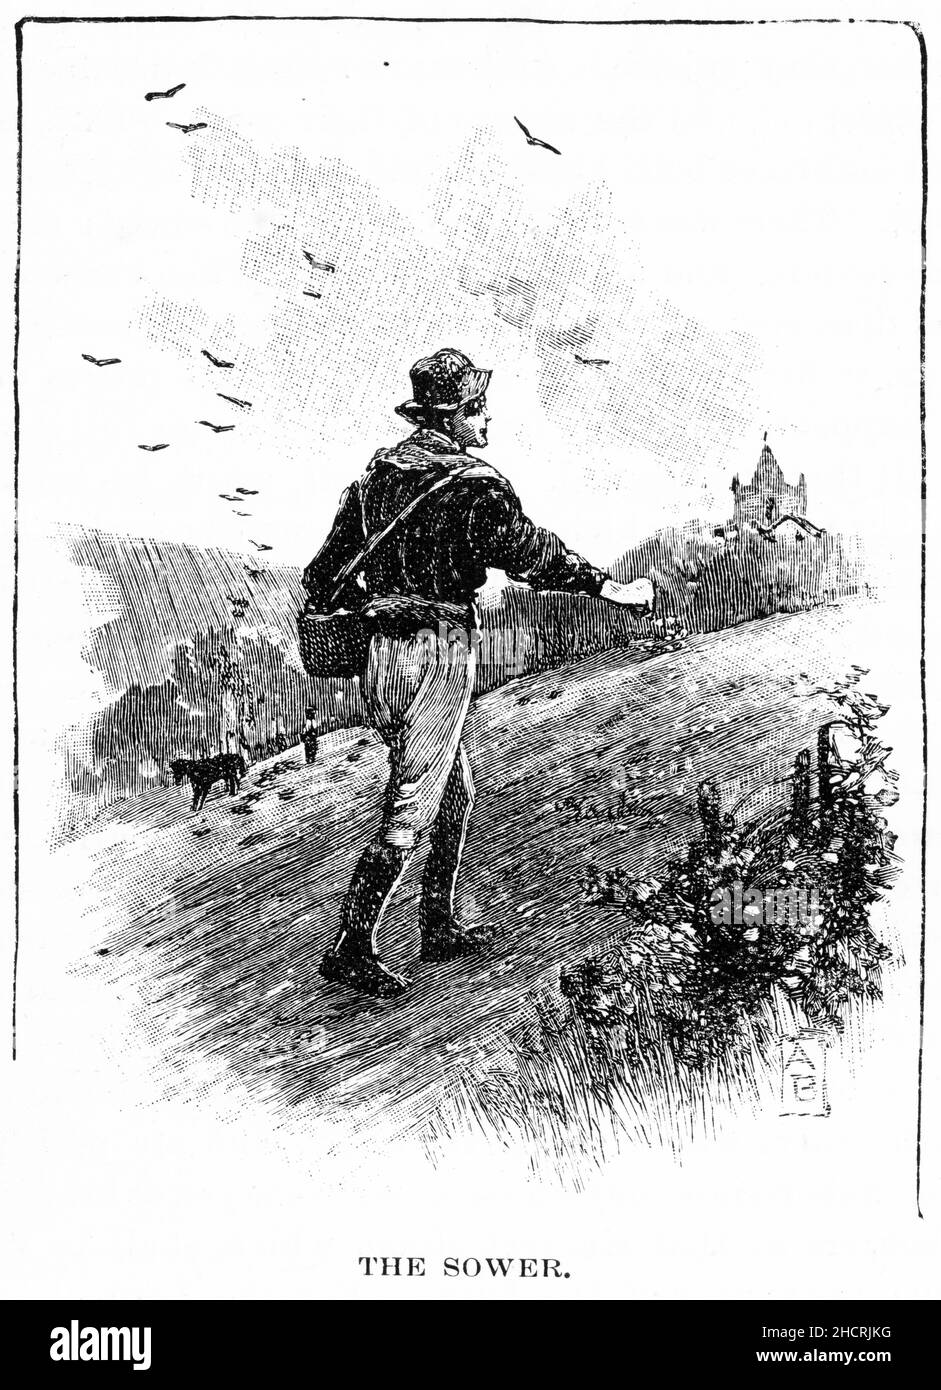 Gravure d'un agriculteur semant des semences à la main pour la prochaine récolte, publiée en 1892 Banque D'Images